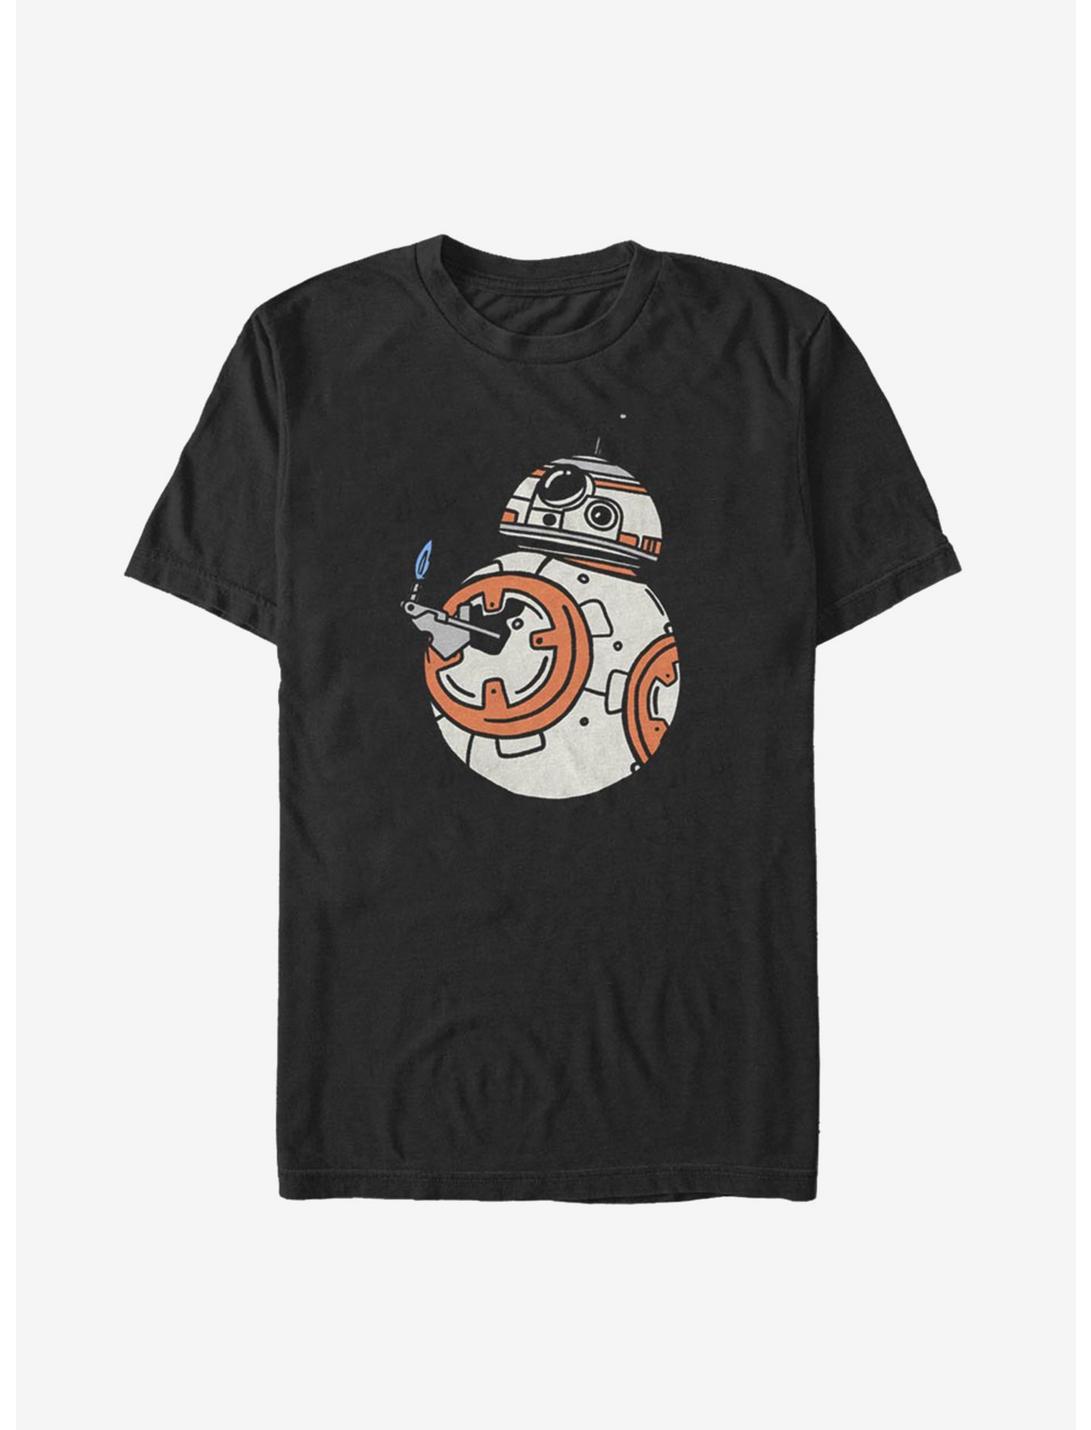 Star Wars Episode IX The Rise Of Skywalker BB Doodles T-Shirt, BLACK, hi-res